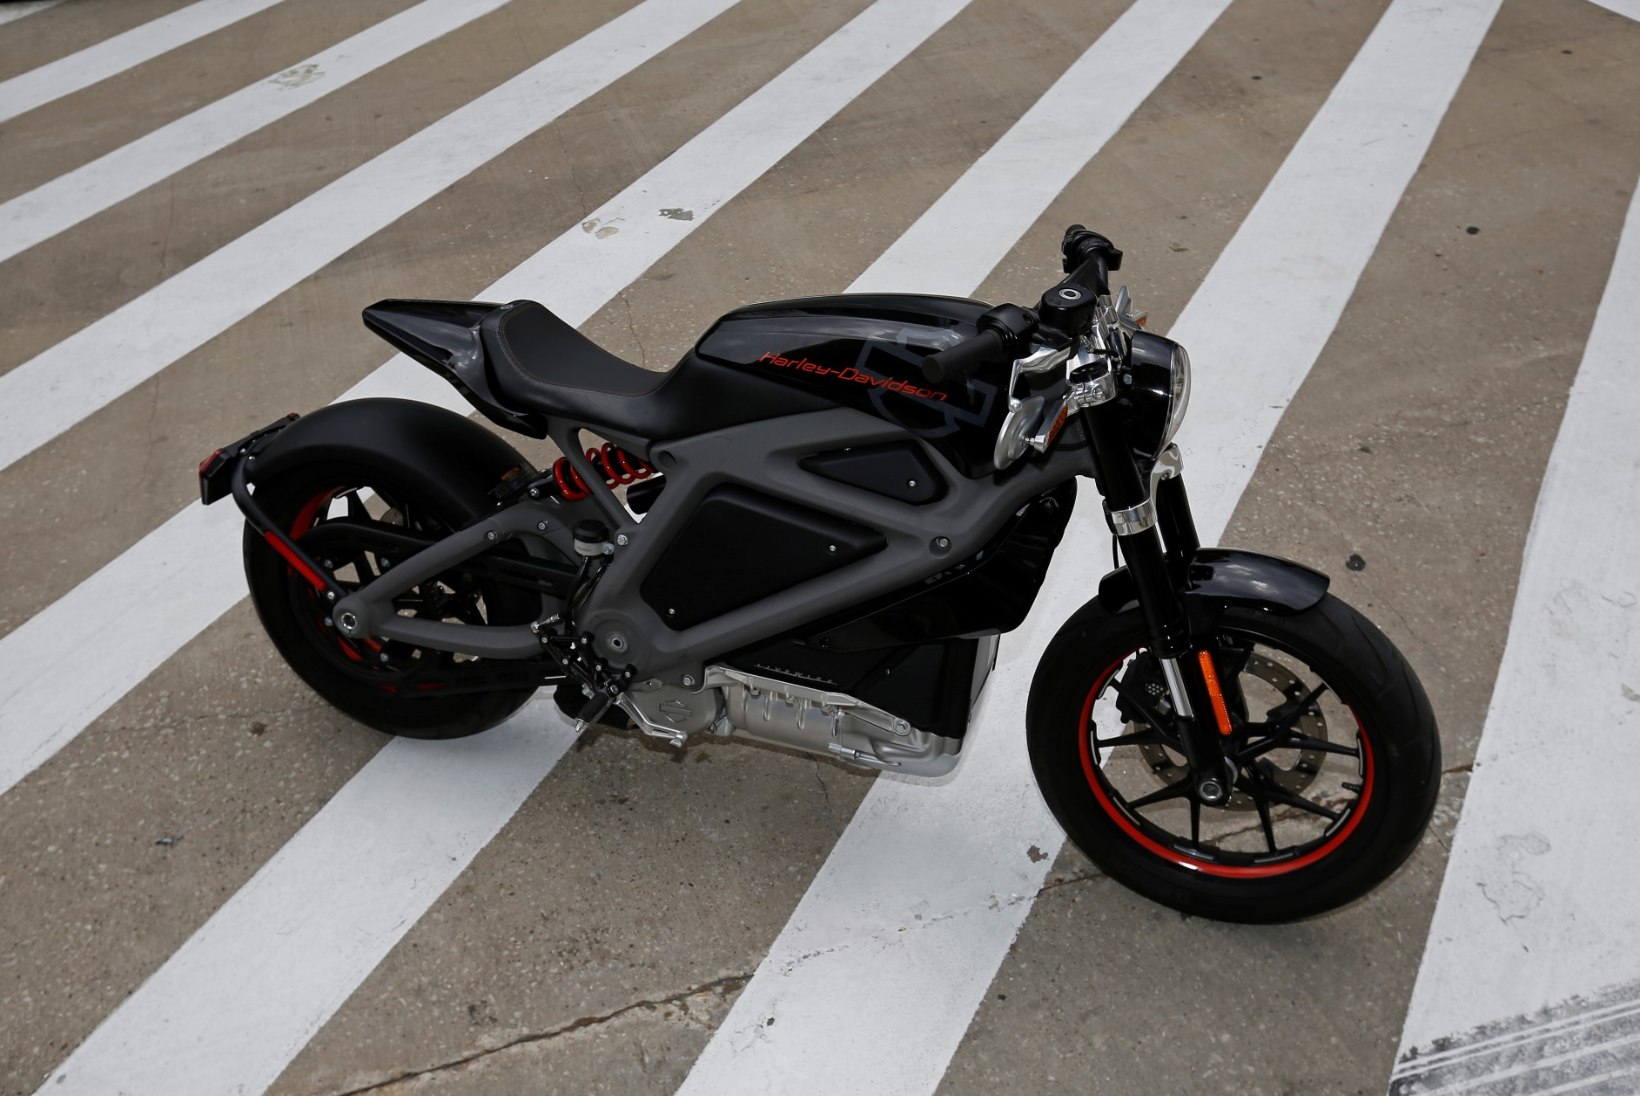 MISKI POLE ENAM PÜHA: Harley-Davidson ehitab elektrimootorratast